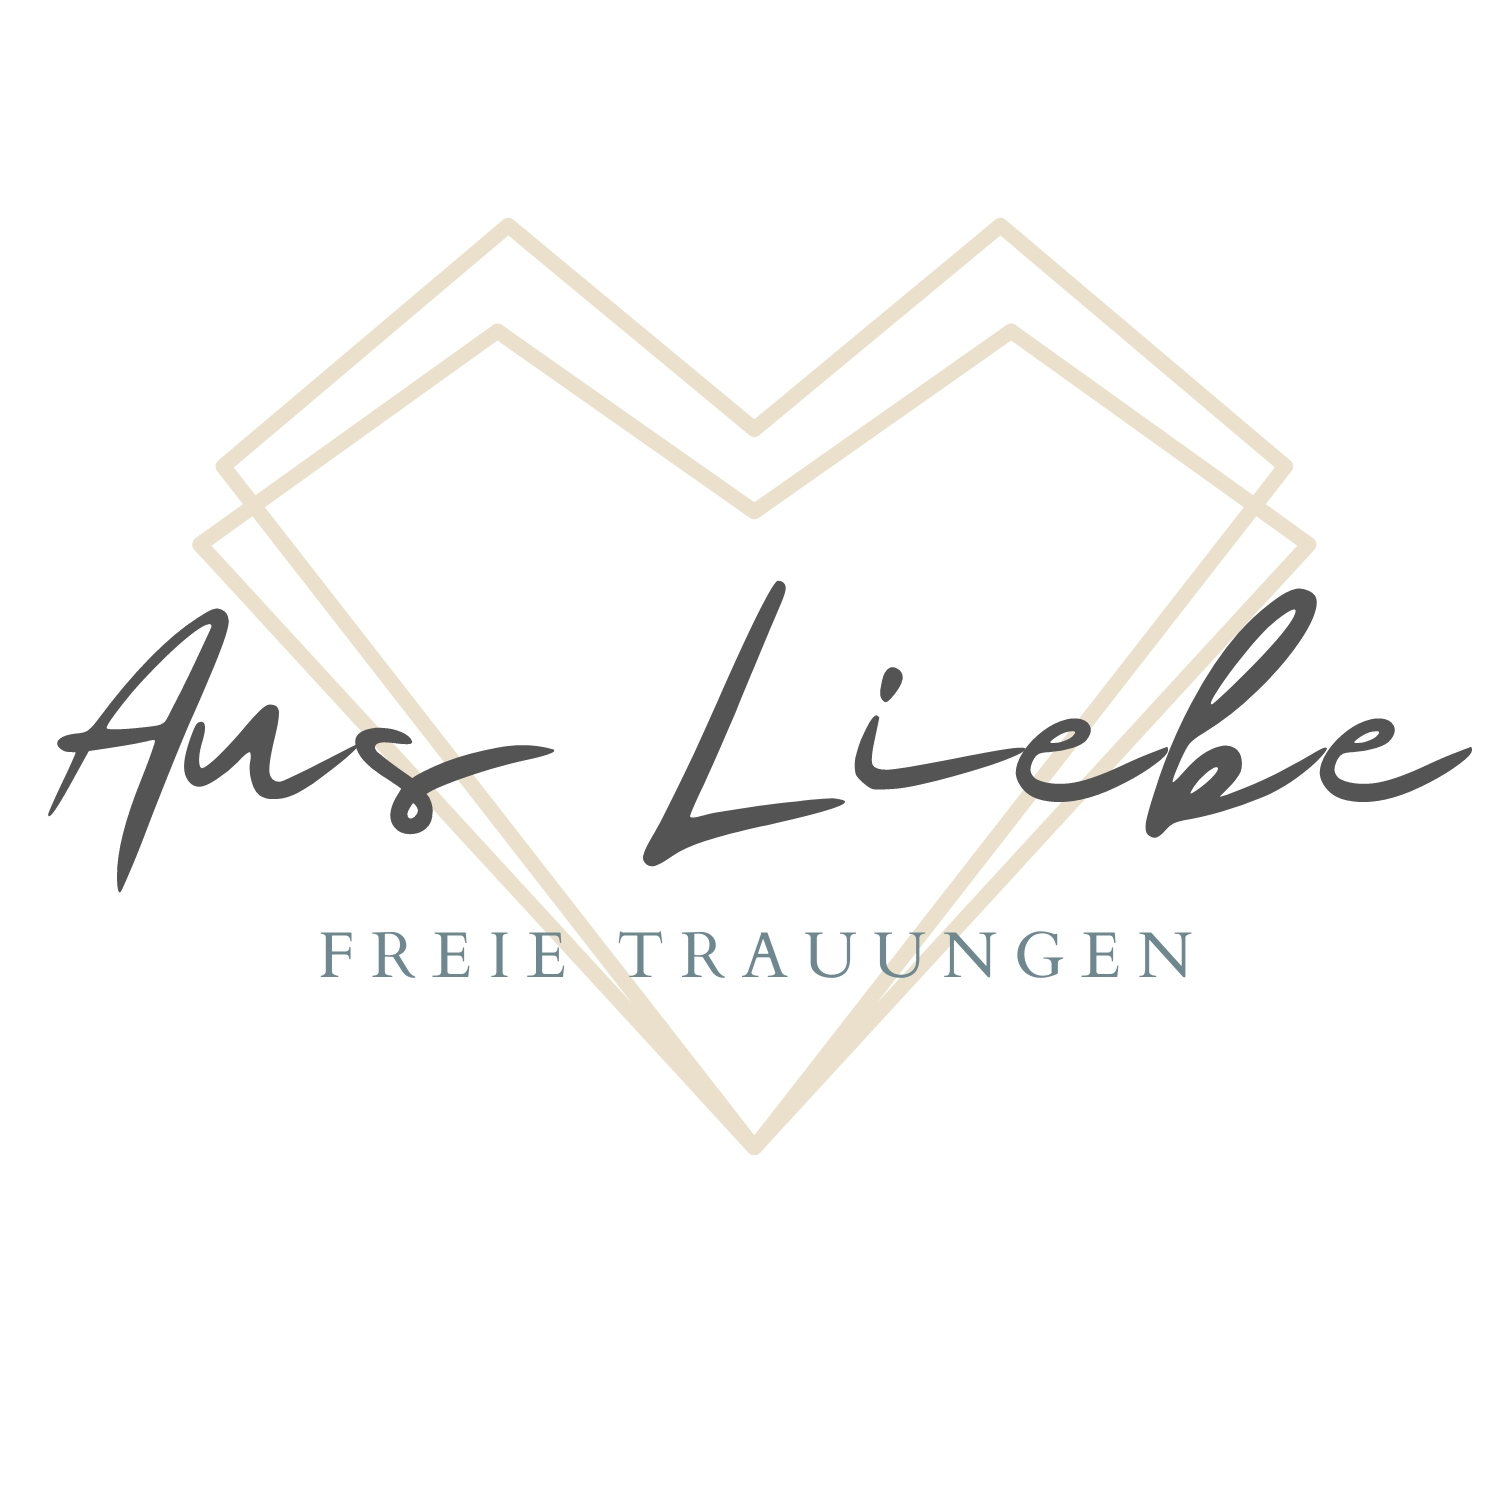 Aus Liebe – Freie Trauungen | Lena Nissen